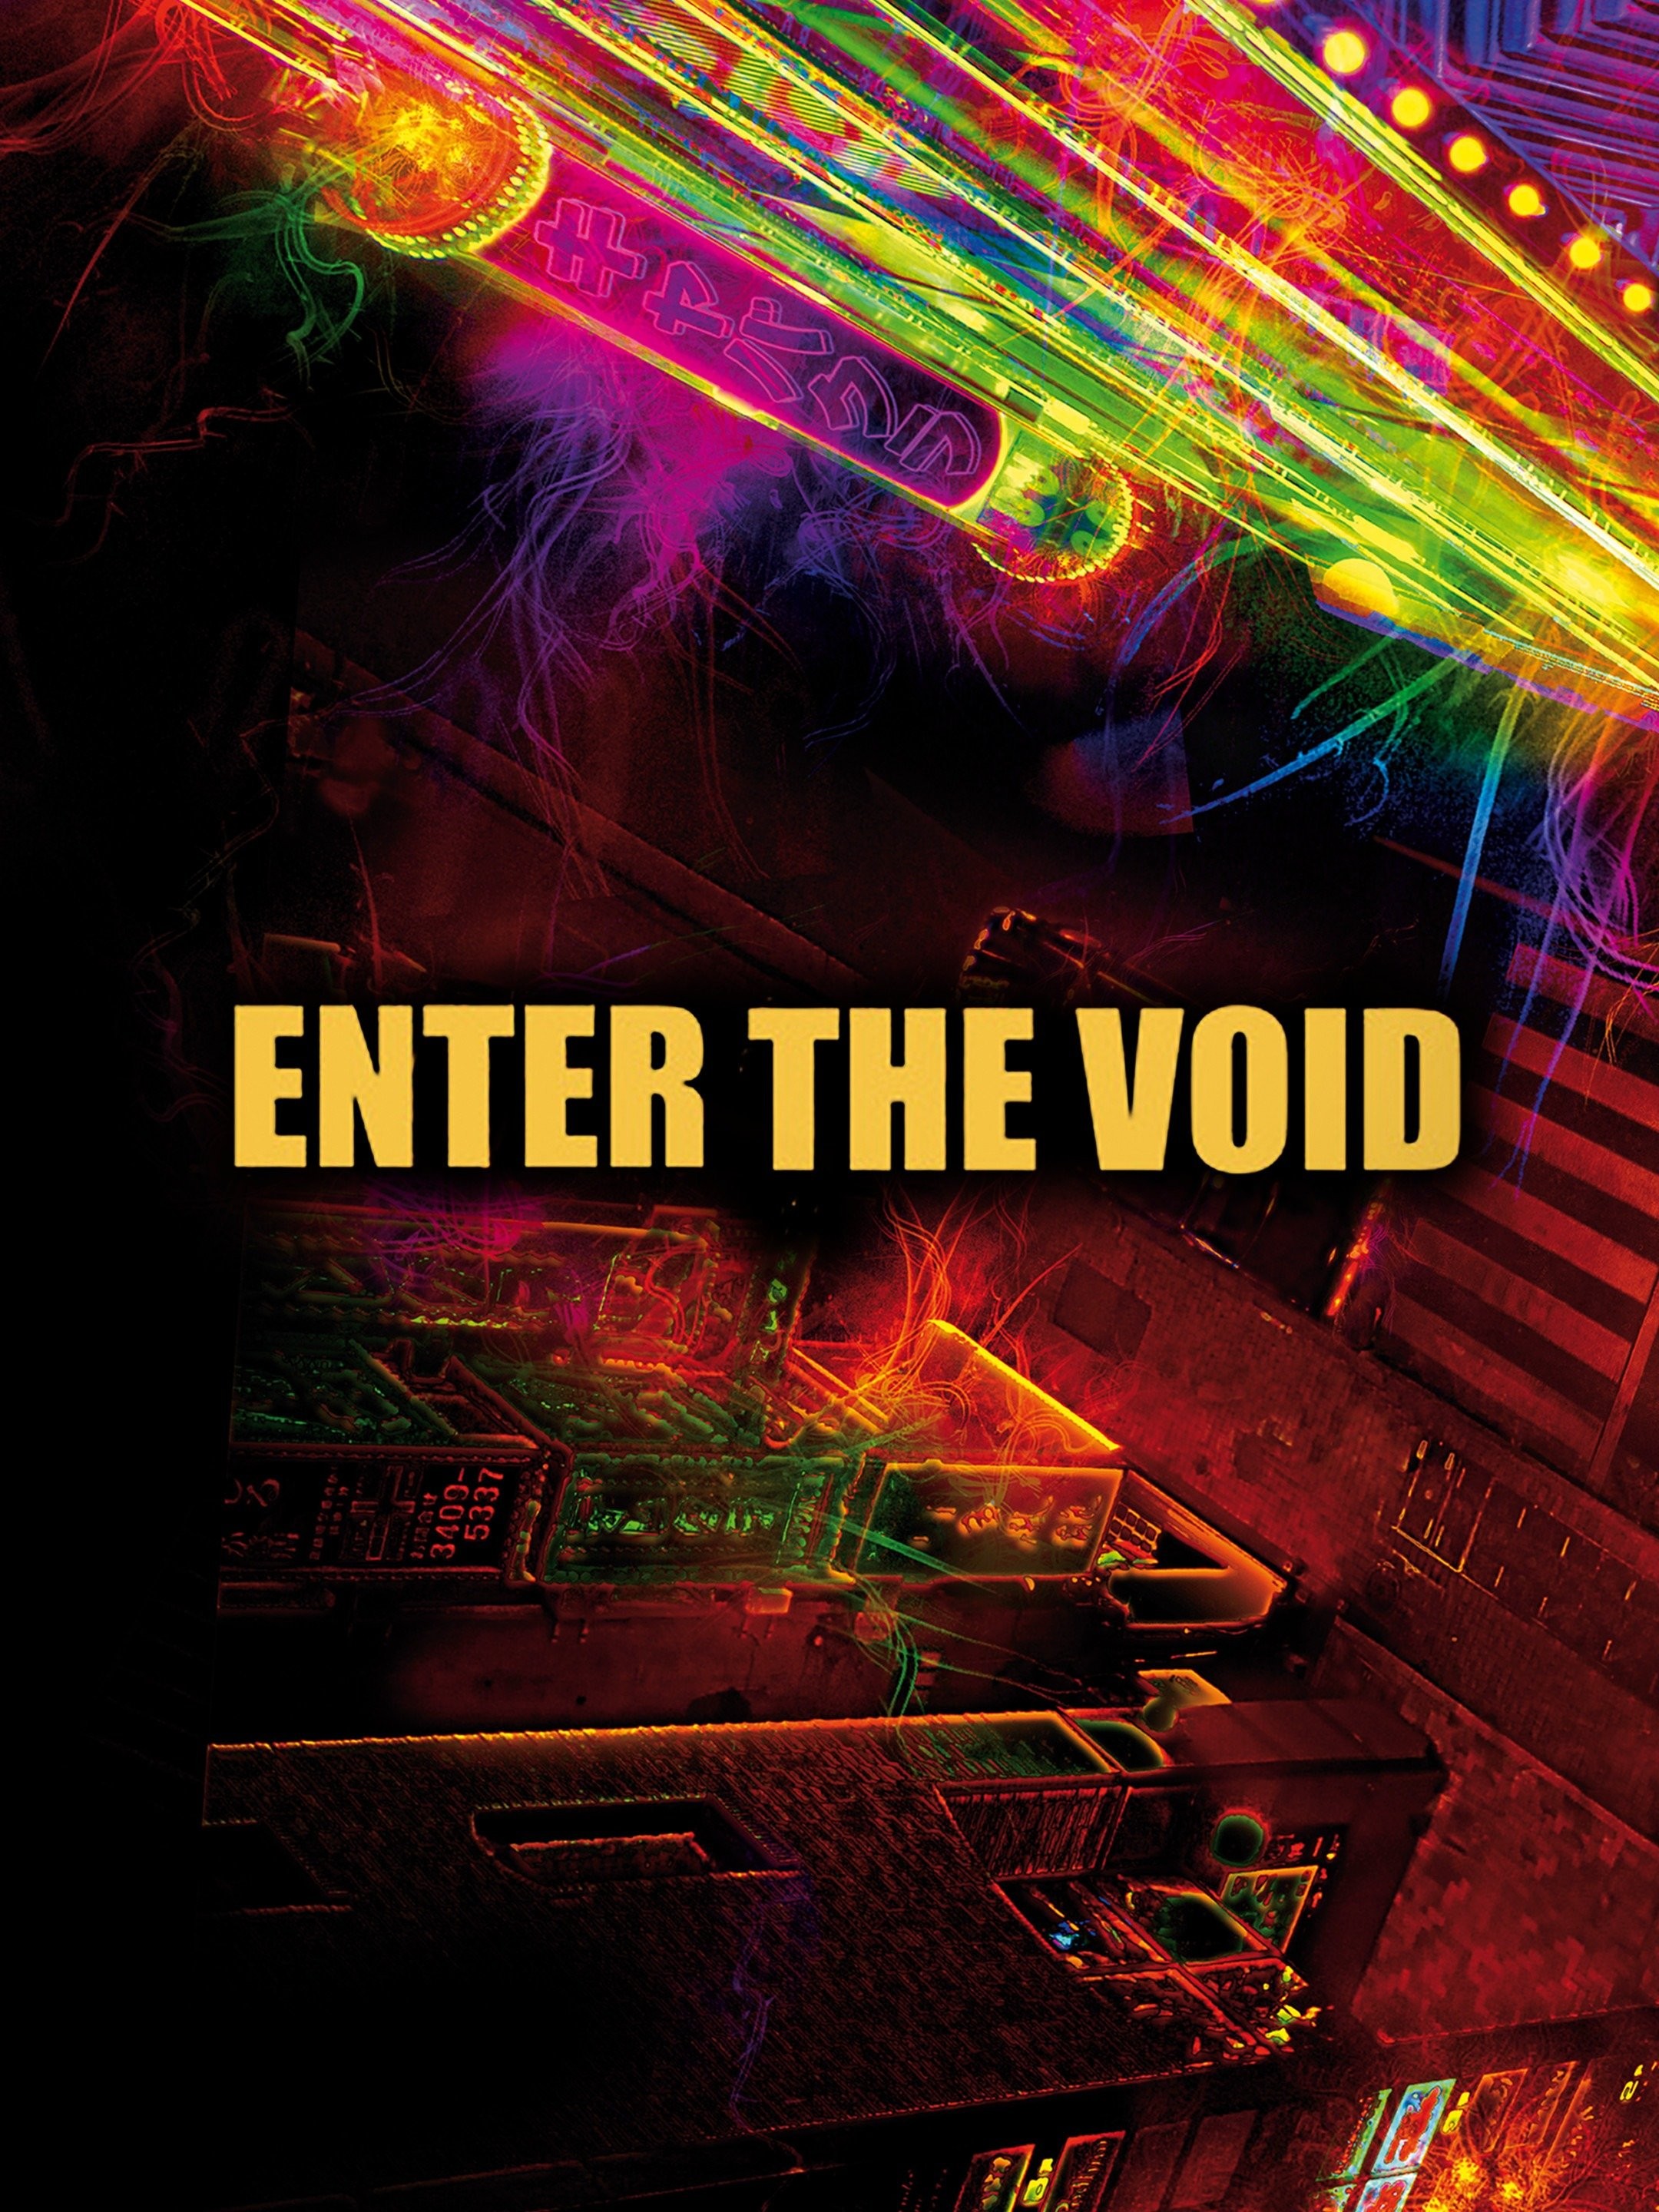 Enter the void 2009 sex scene